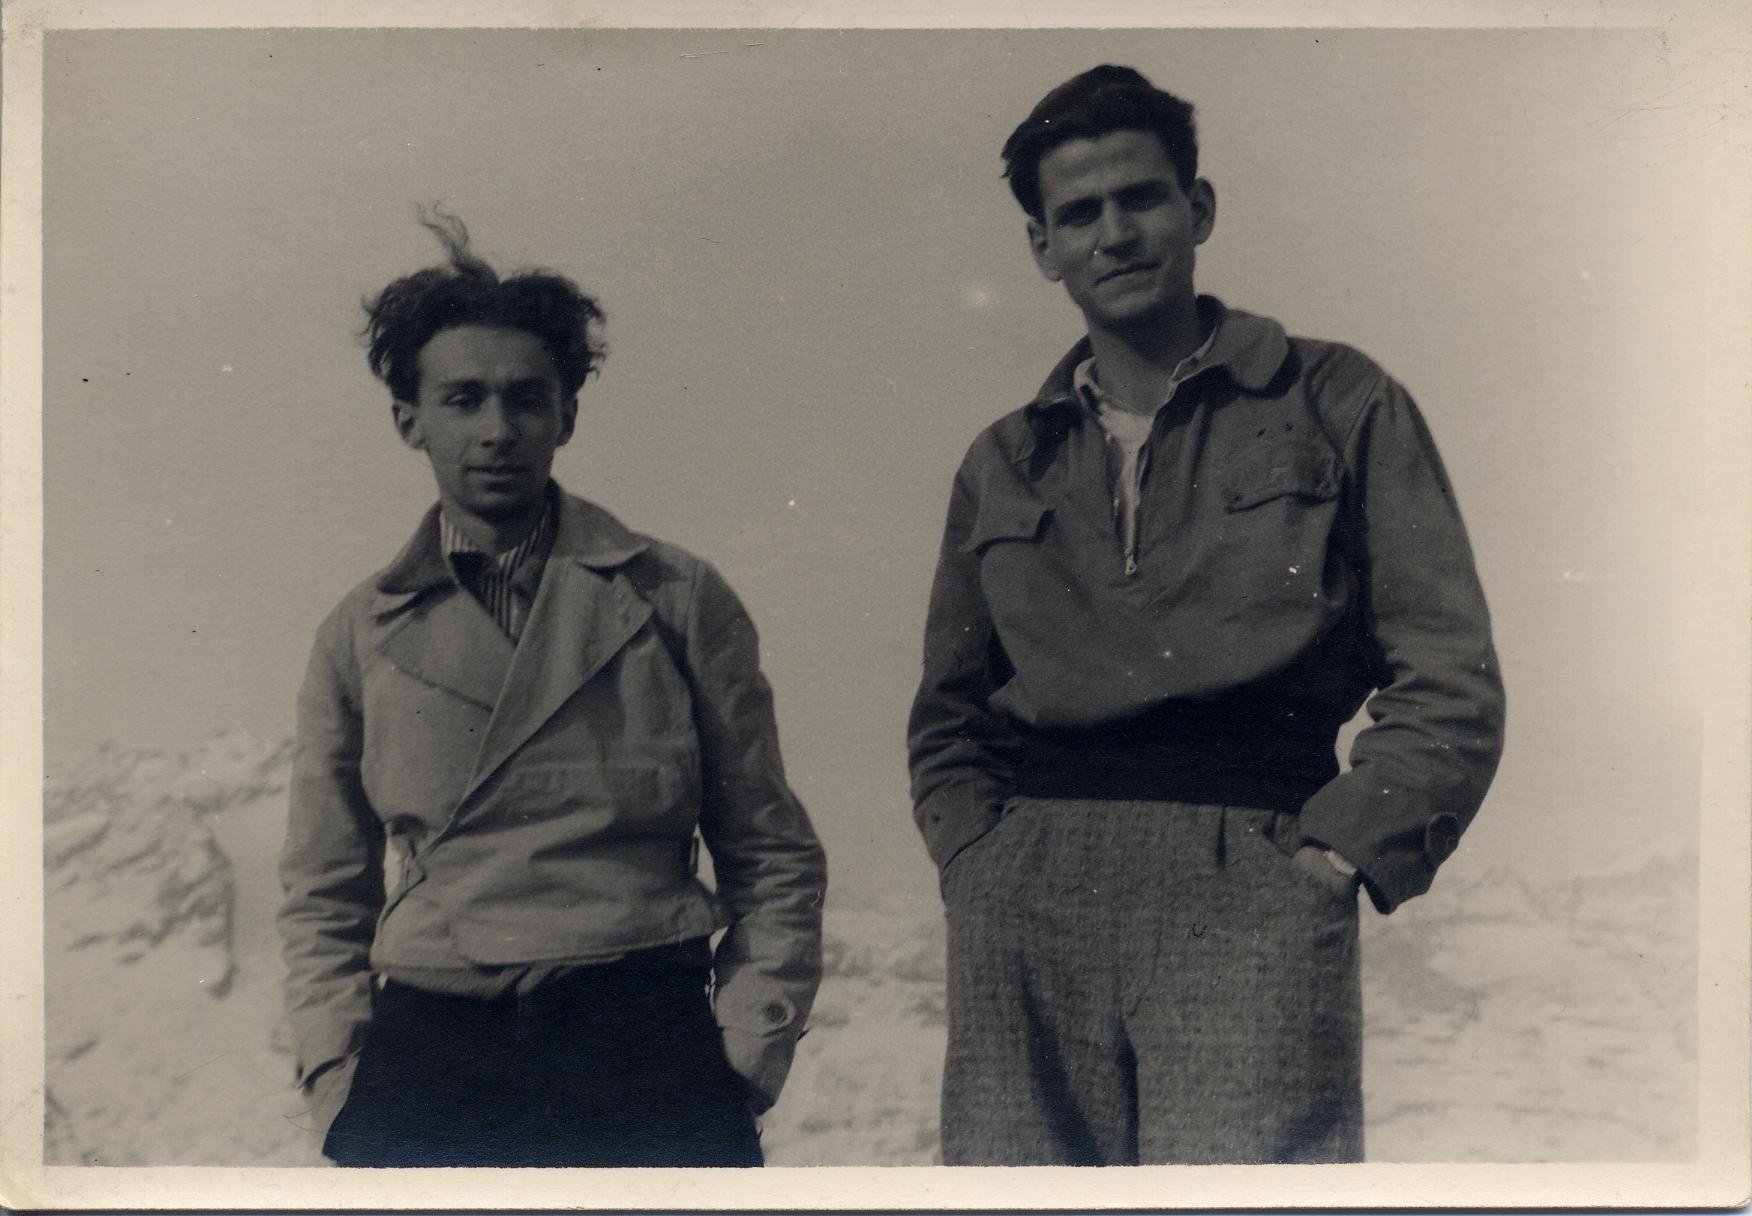 Nella fotografia sono ritratti, da sinistra, Primo Levi e Alberto Salmoni.